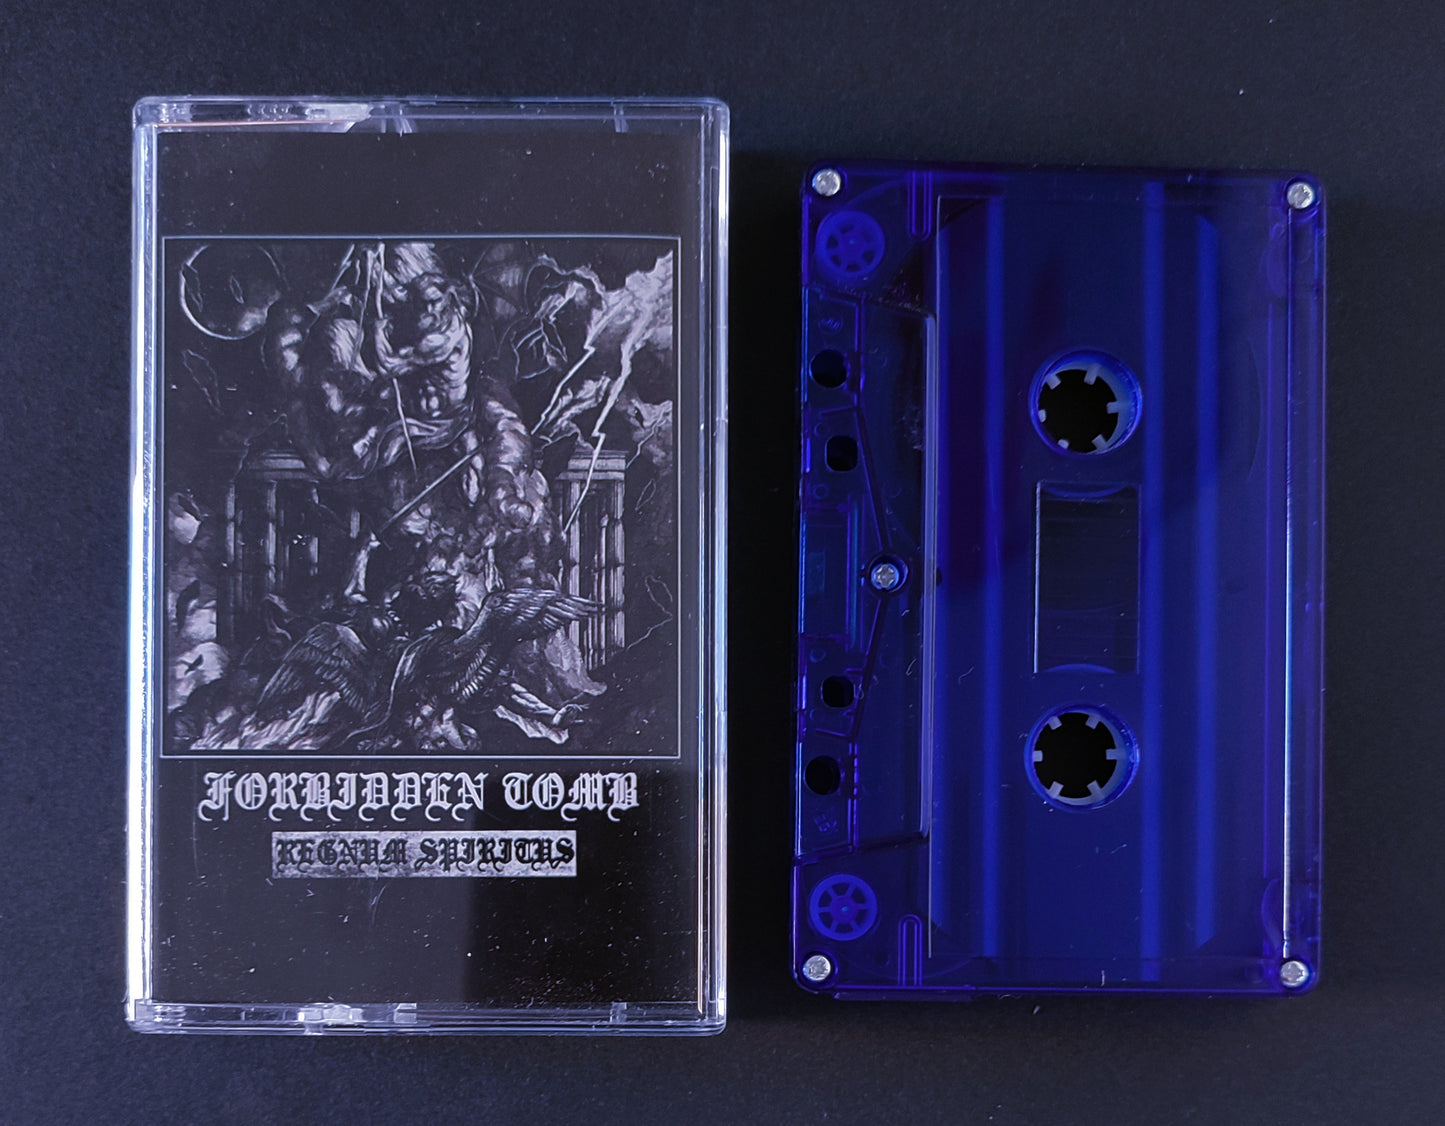 Forbidden Tomb (Indonesia) "Regnum Spiritus" - Pro tape *New in stock*